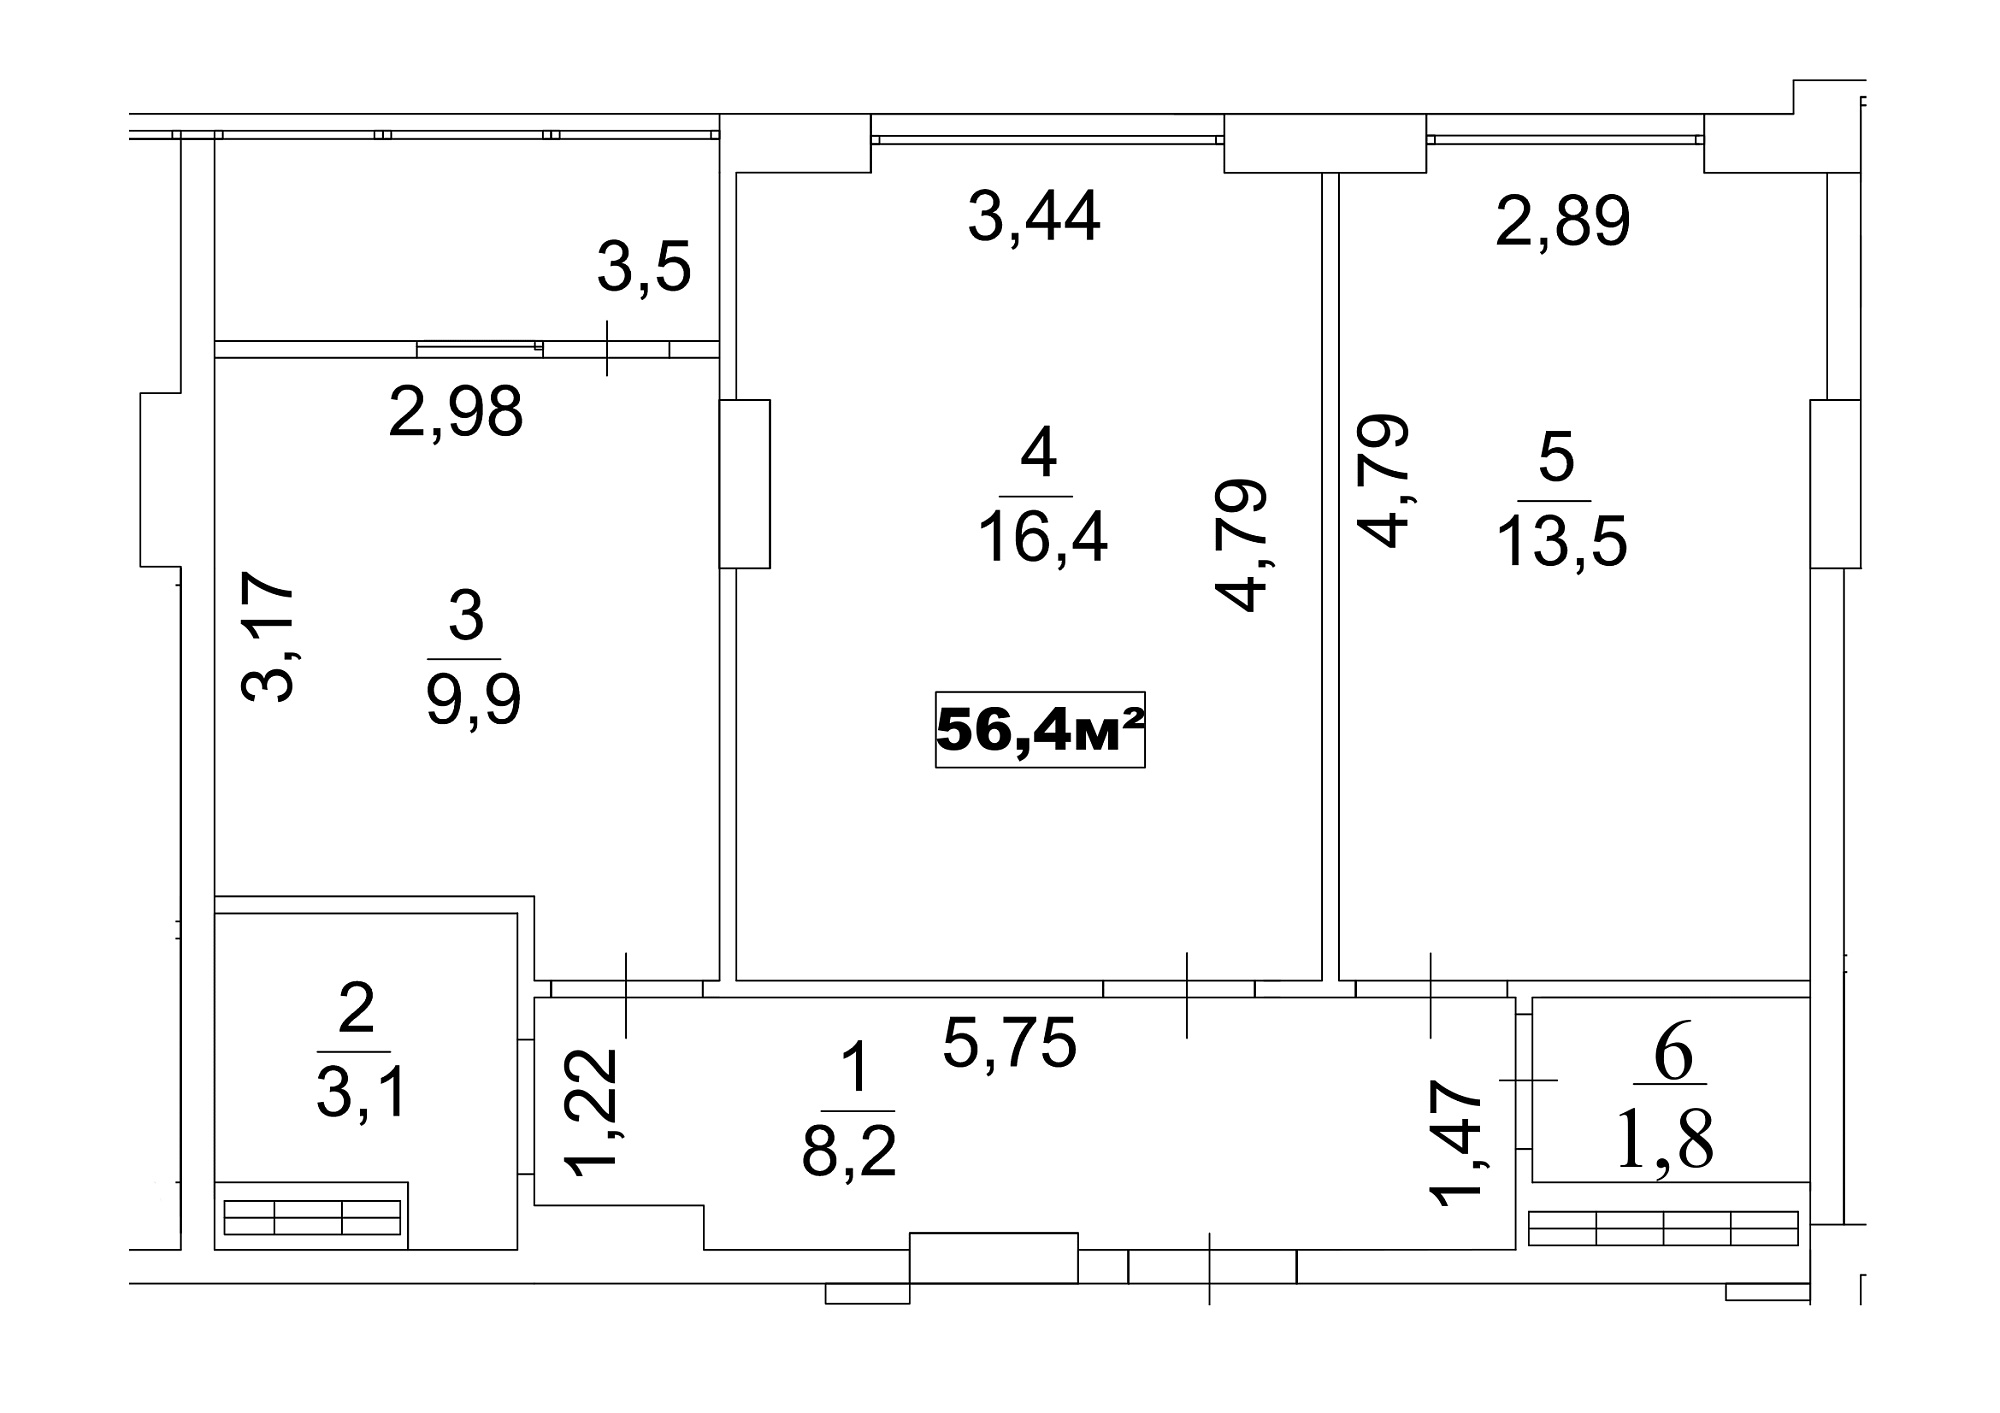 Планировка 2-к квартира площей 56.4м2, AB-13-01/0003а.